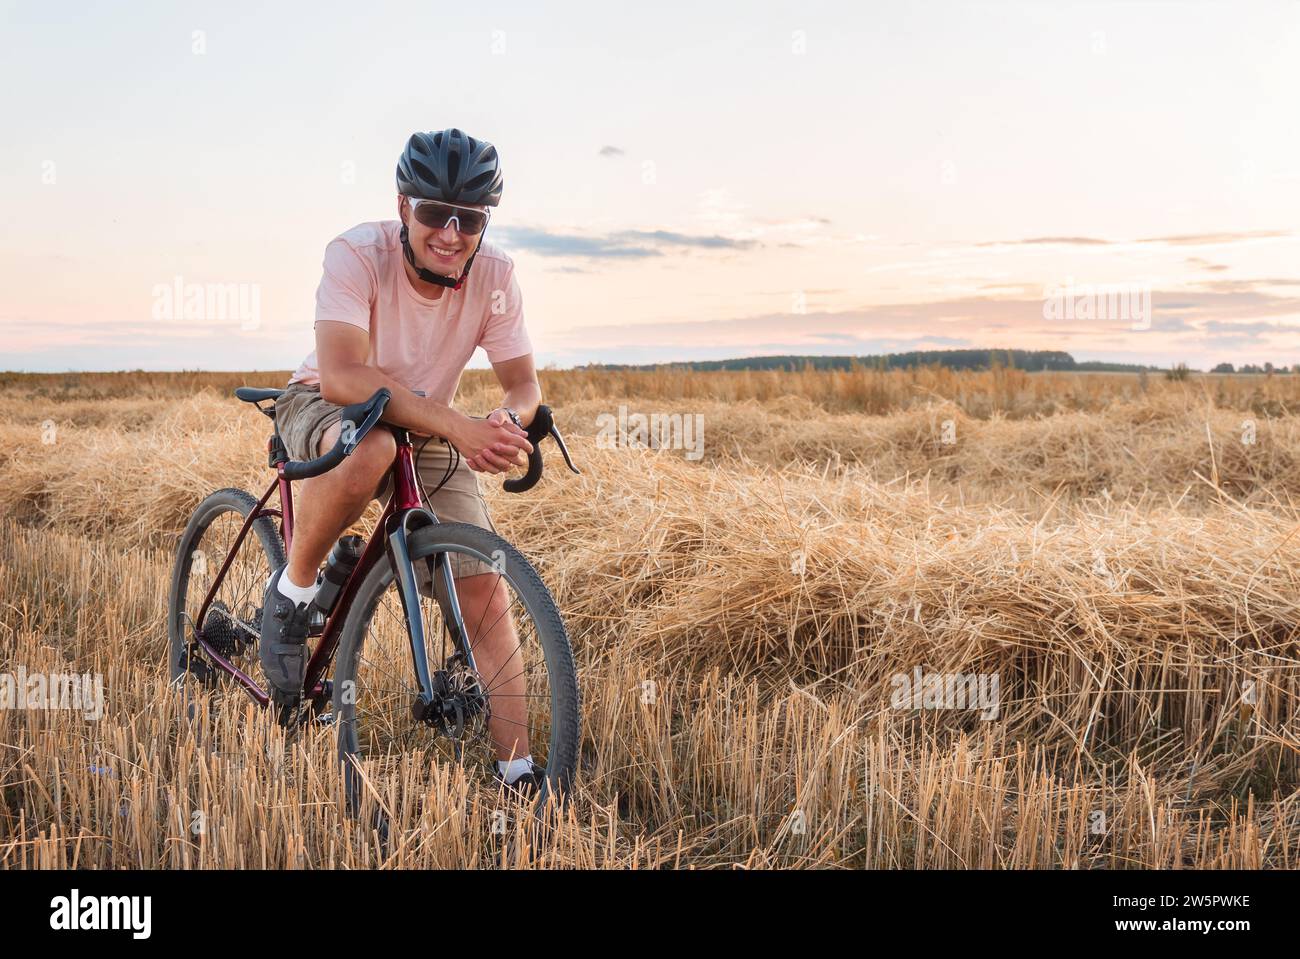 Radfahrer stehen bei Sonnenuntergang auf dem Feld. Wunderschöne Landschaft mit Mann in Helm und Sonnenbrille, Schotterfahrrad und trockenem Gras. Sportlicher Lifestyle. Stockfoto